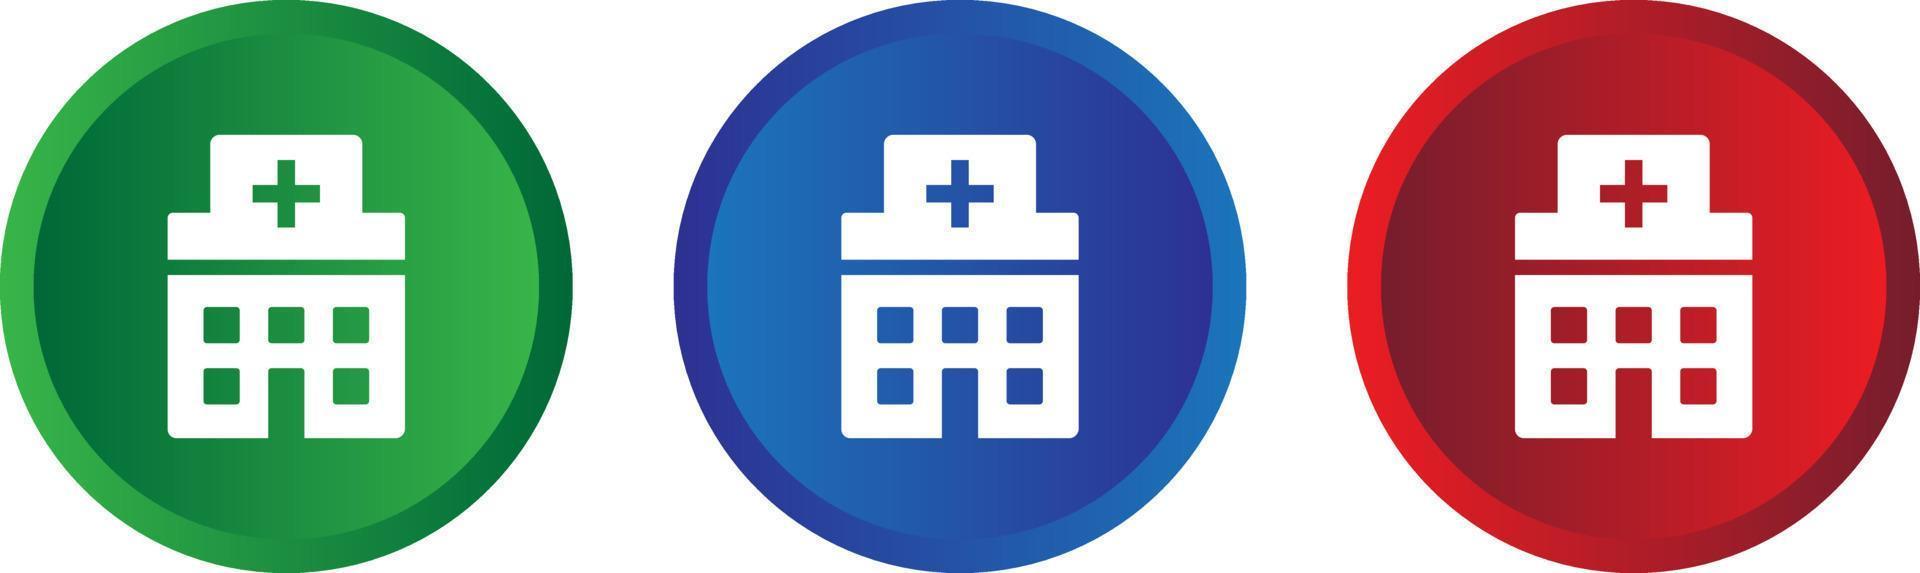 hospital icon vector. hospital icon vector illustration